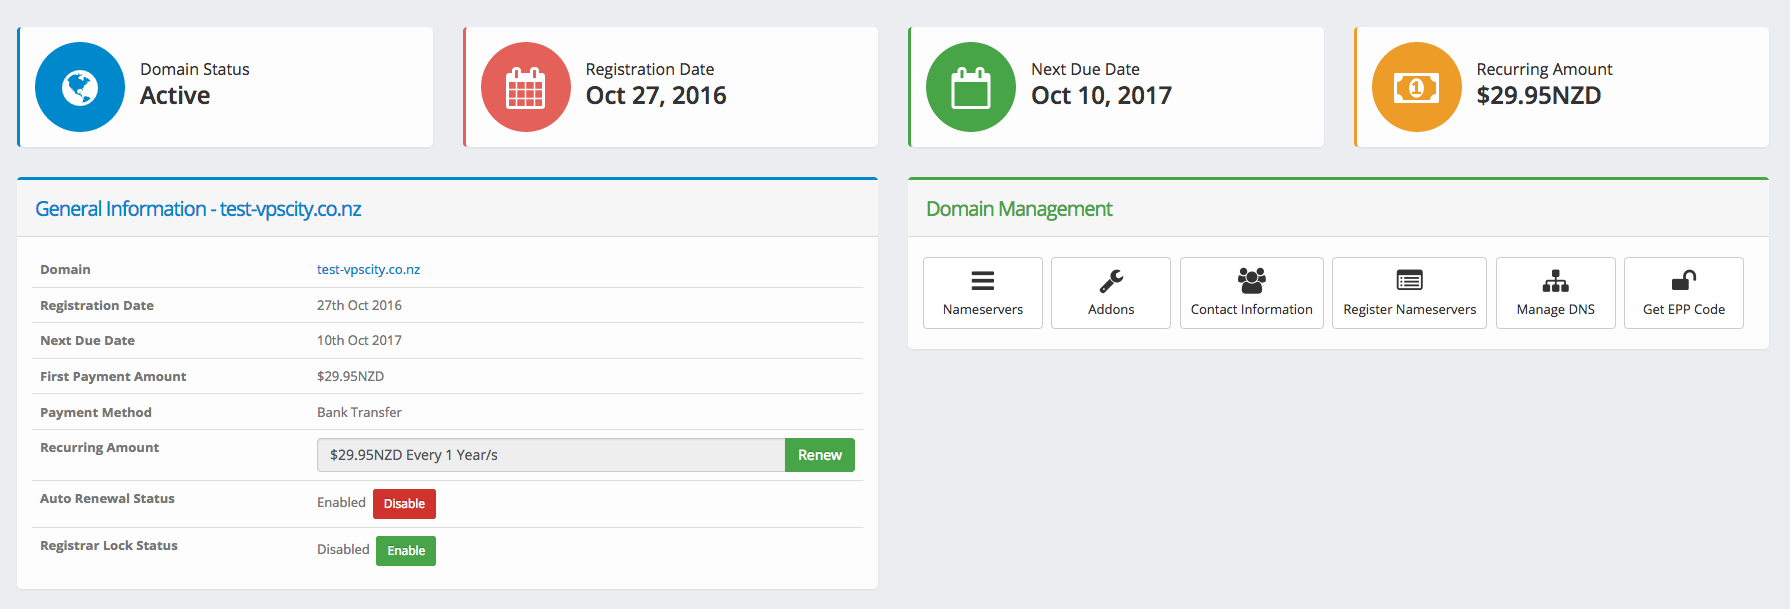 Domain Management Features